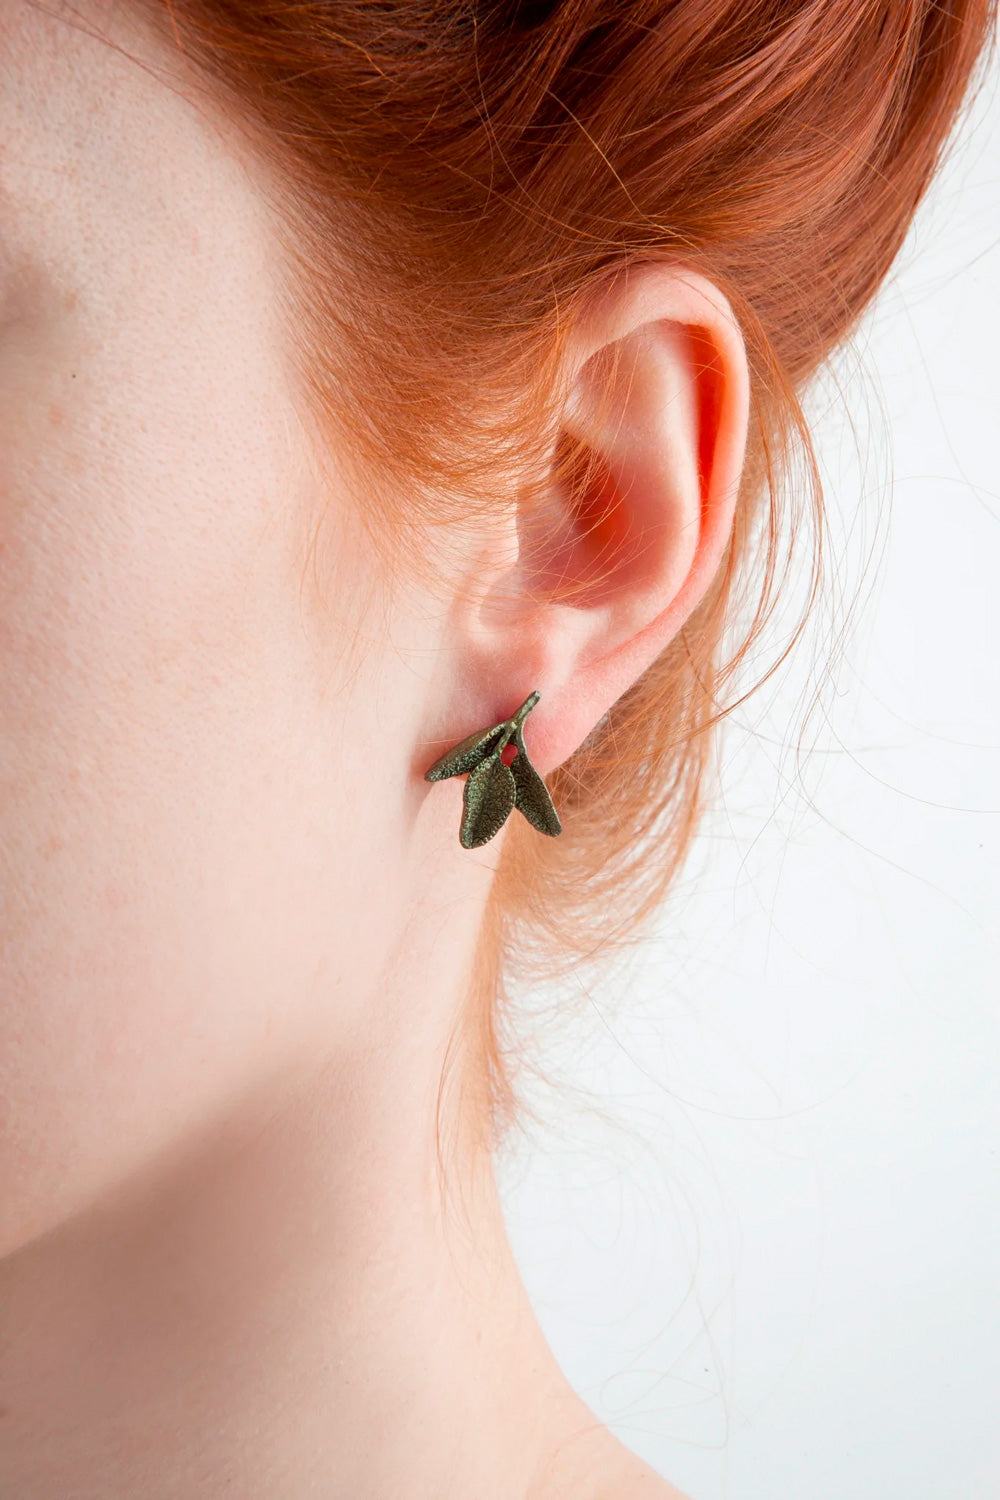 プチハーブ - セージポストピアス / Petite Herb - Sage Post Earring